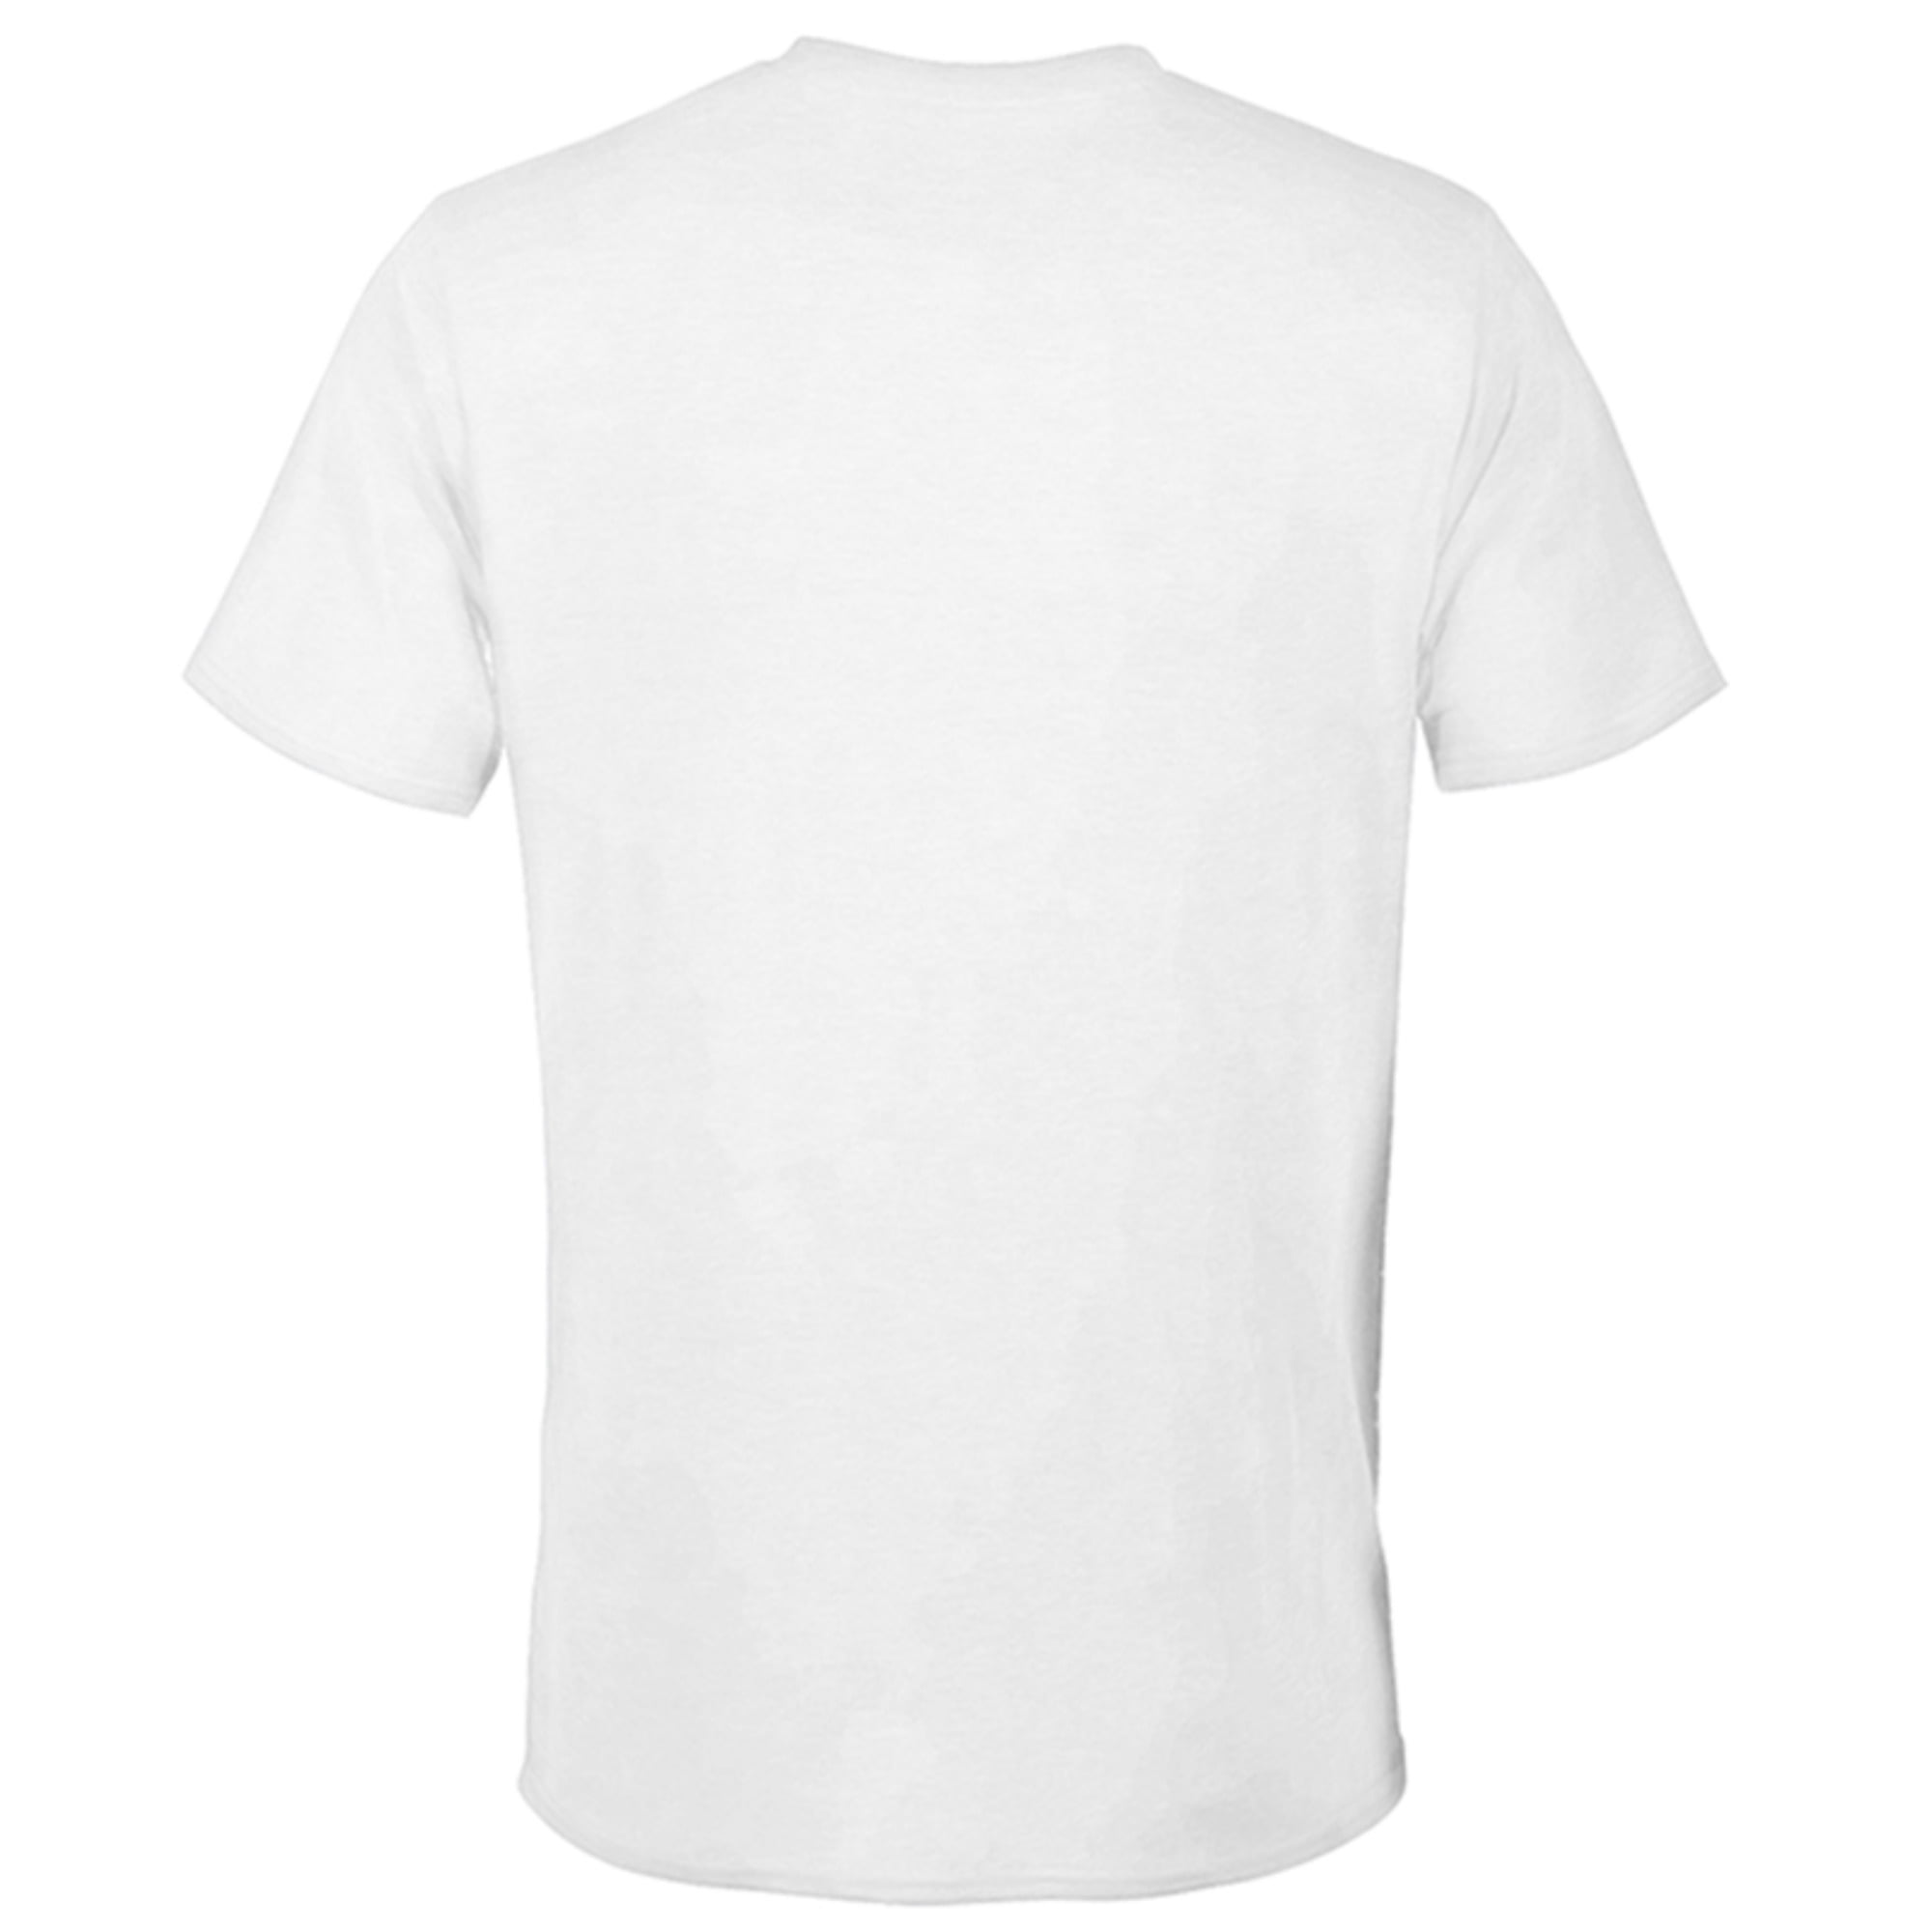 Disney Strange World Let's Go Make History - Long Sleeve T-Shirt for Men -  Customized-White 